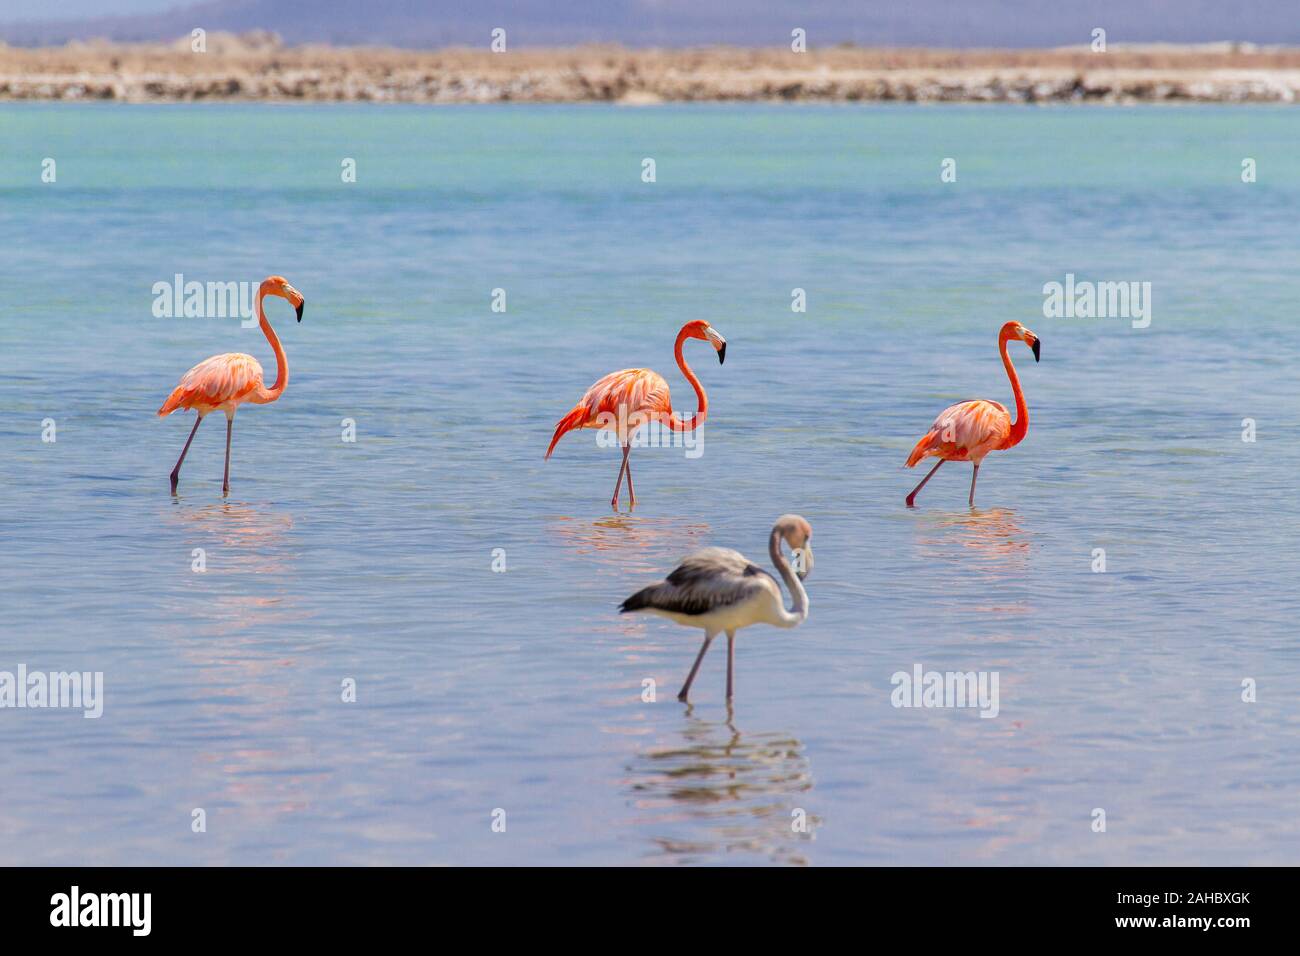 Gruppe der großen roten Karibik flamingos Wandern in See an der Küste Stockfoto